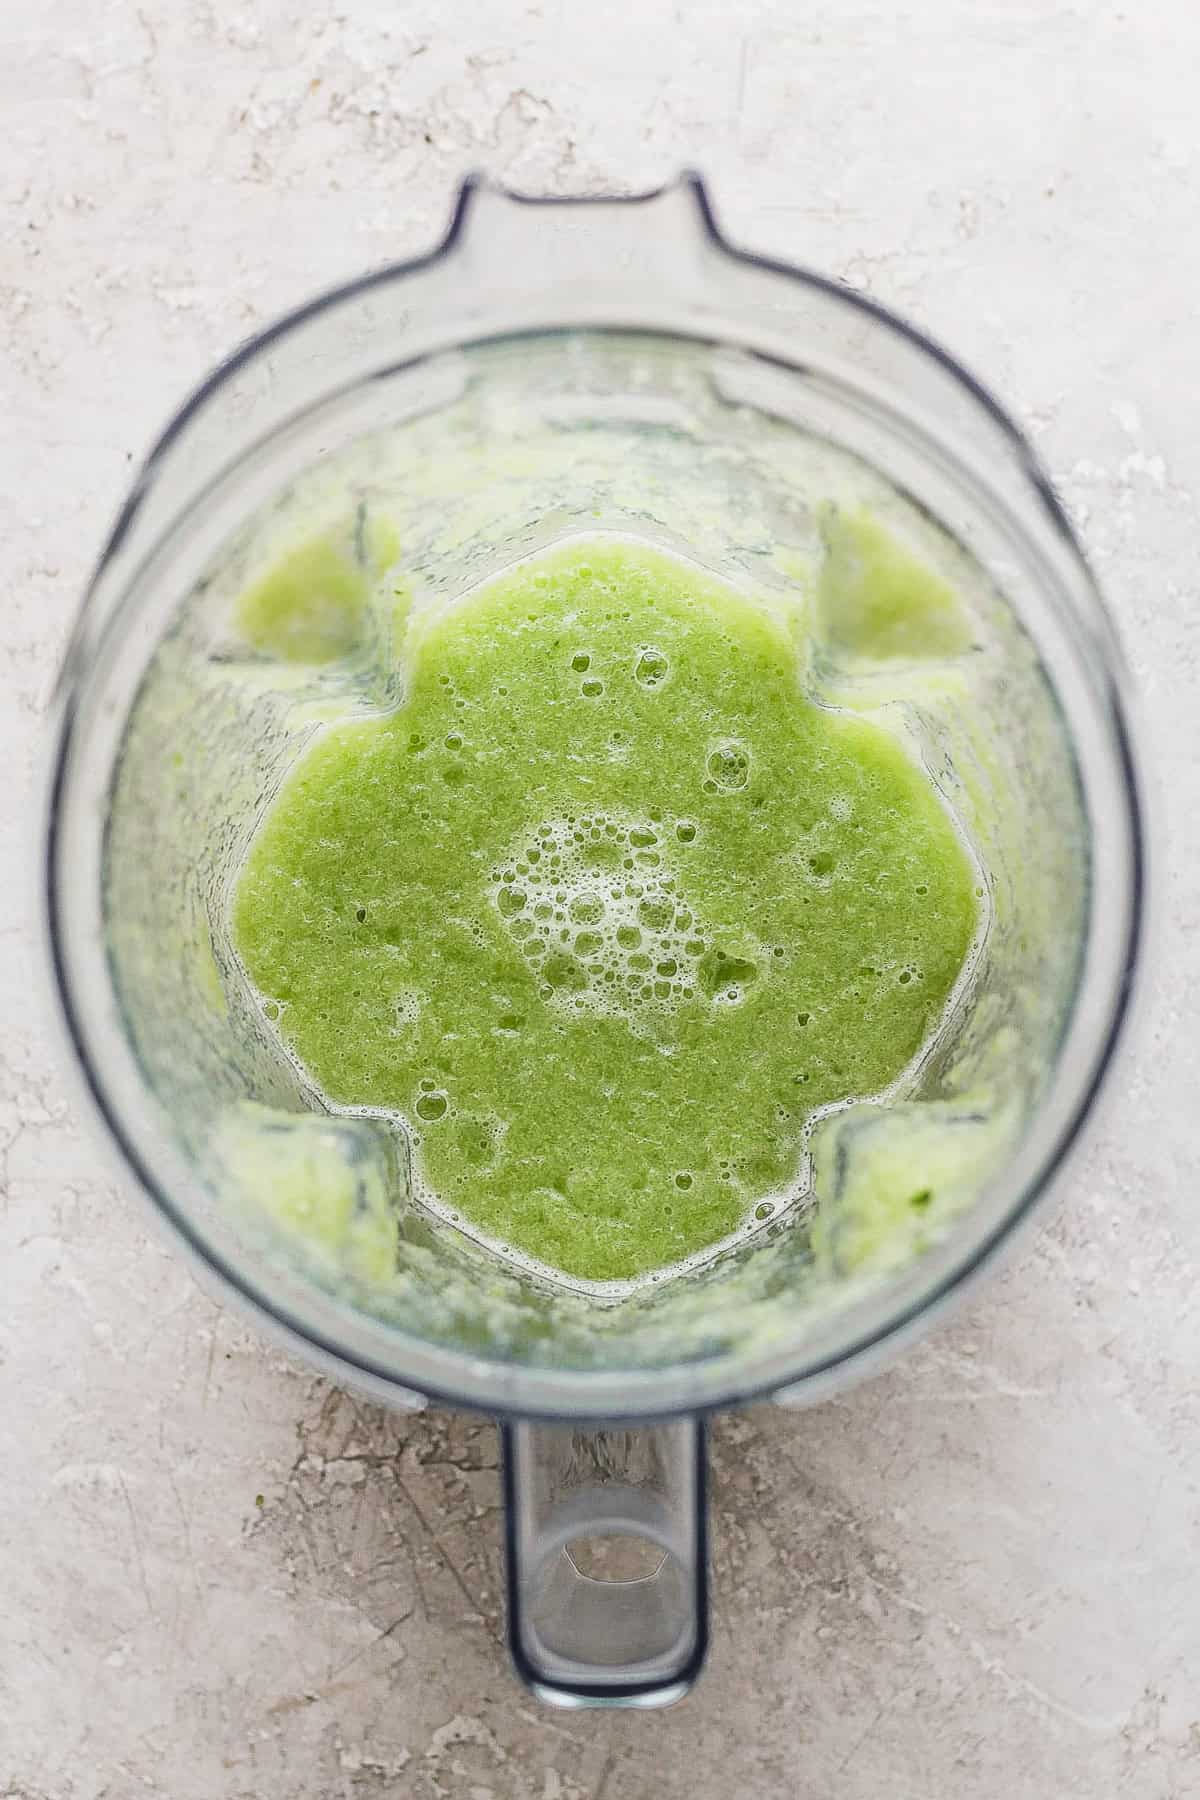 Blended cucumber juice in a blender.